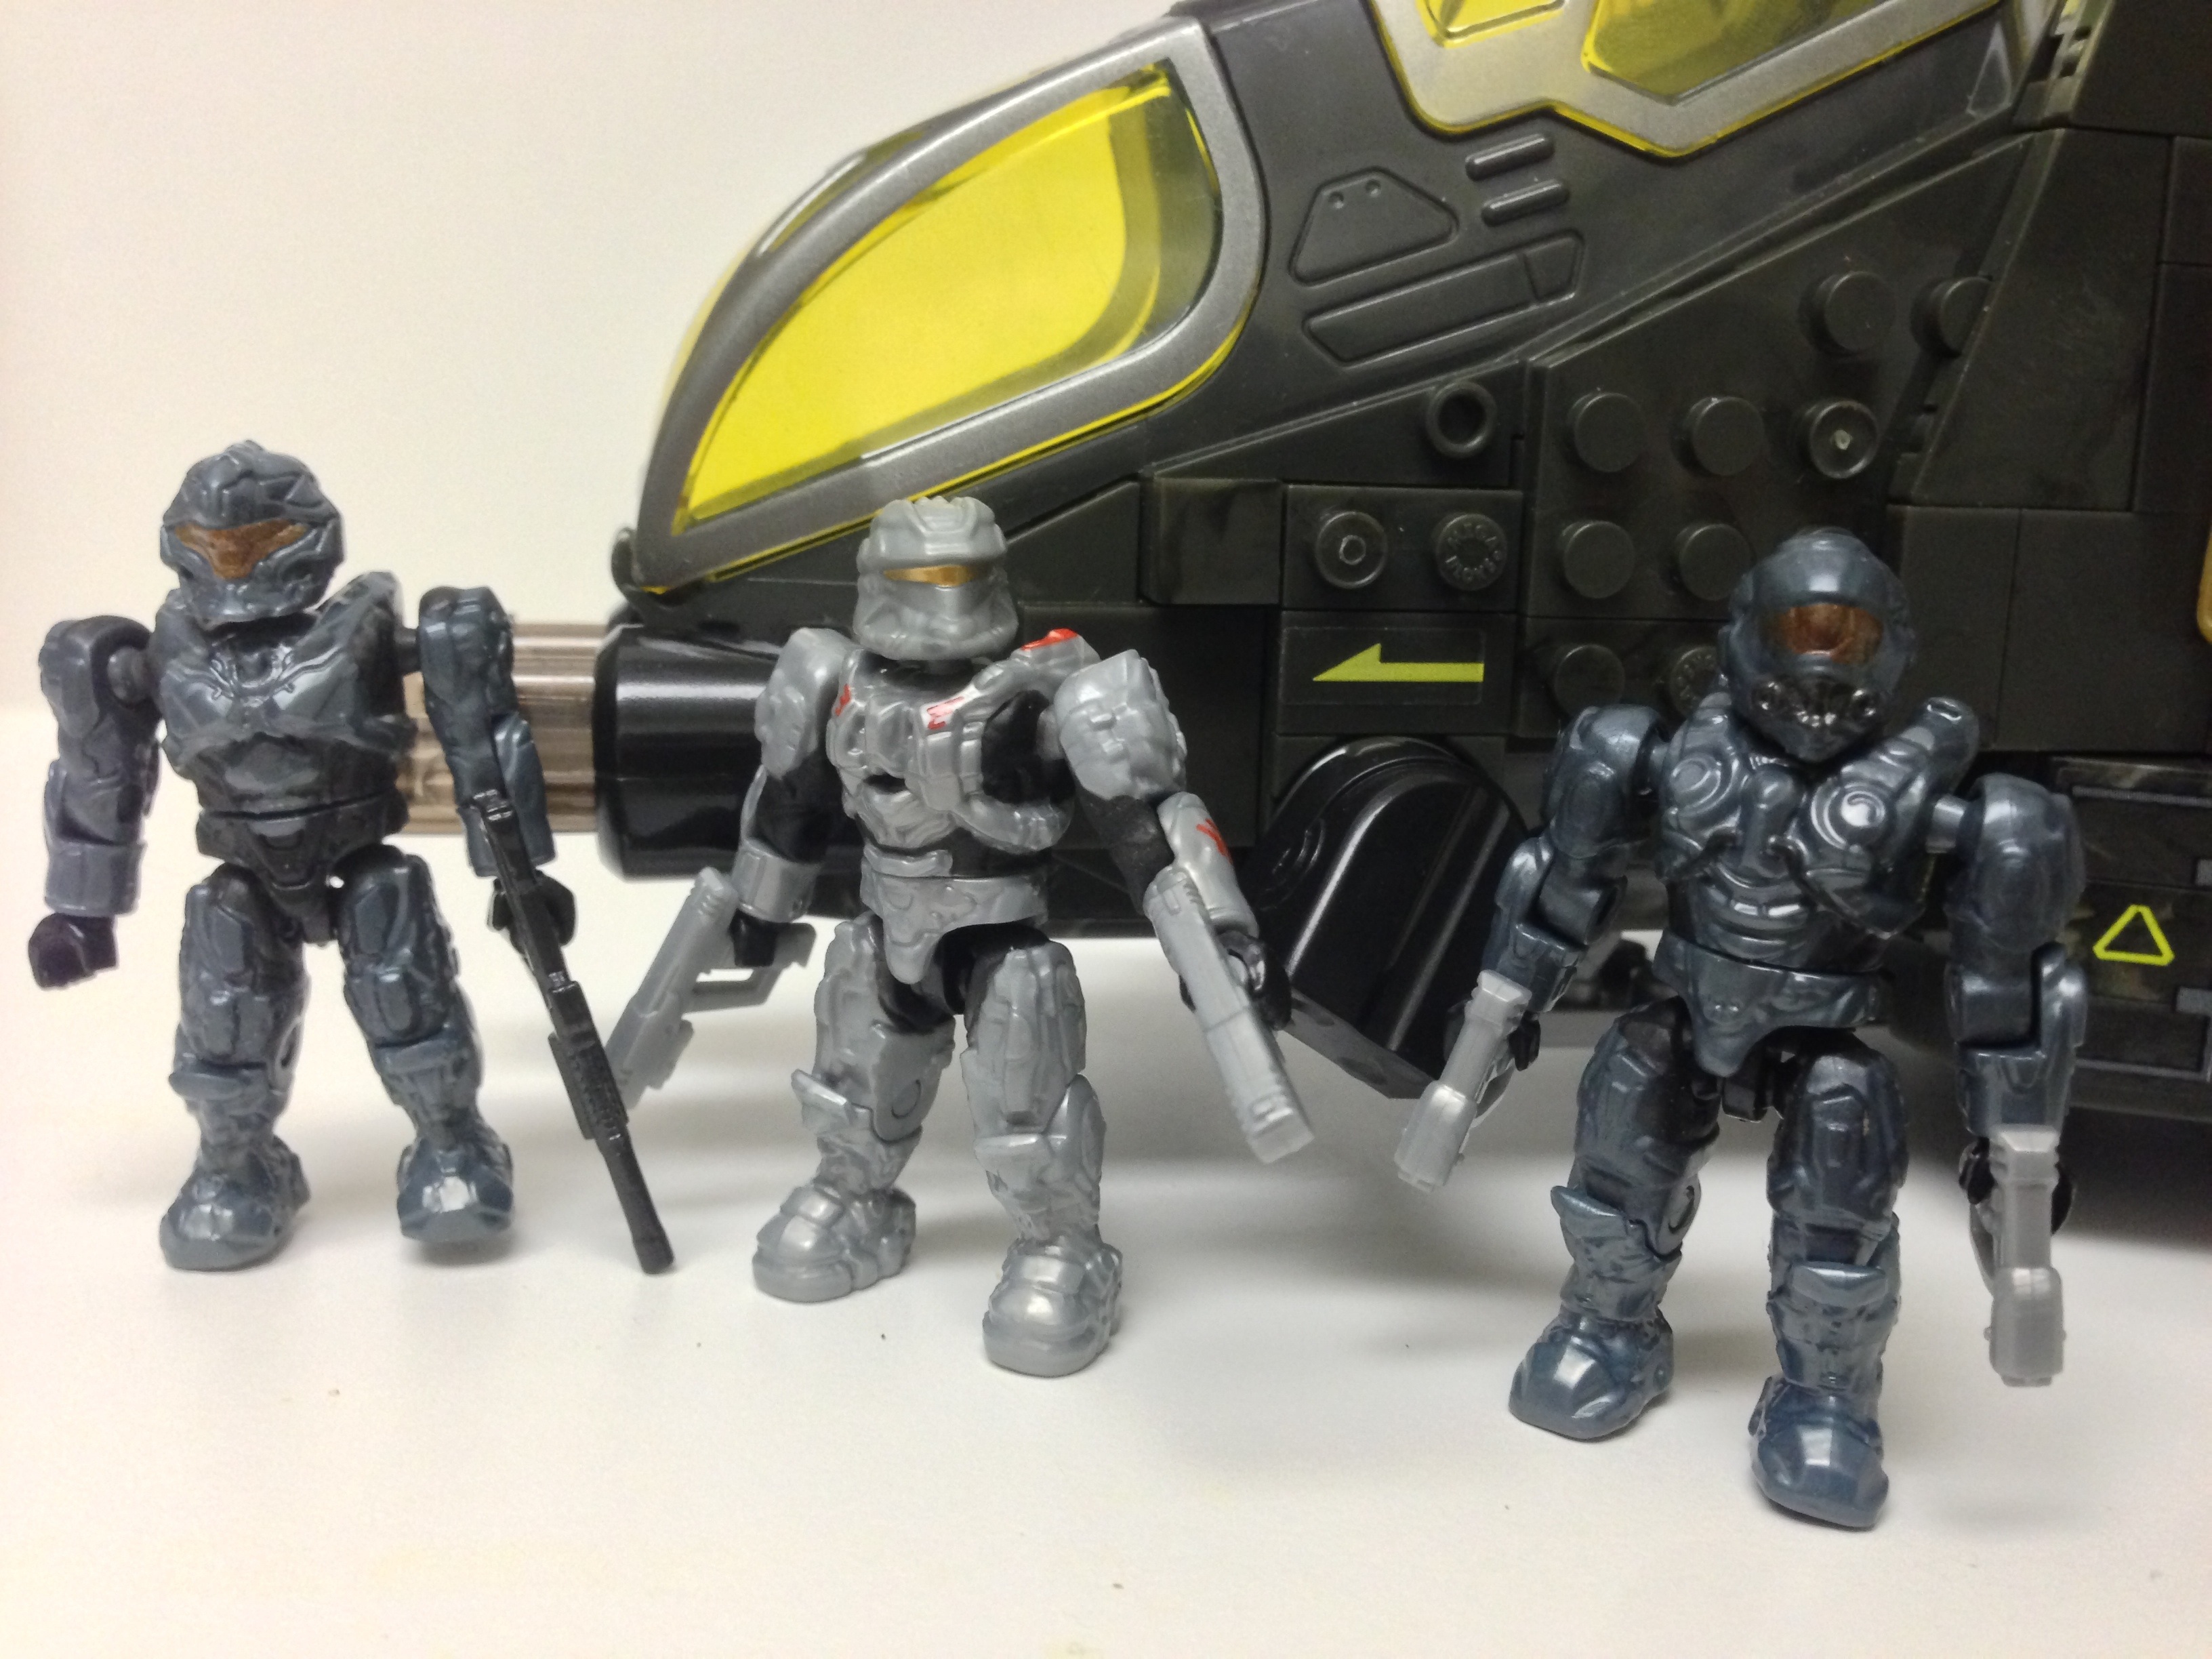 Halo Mega Bloks UNSC Pelican Gunship Review Part 1: Figures - Halo Toy News